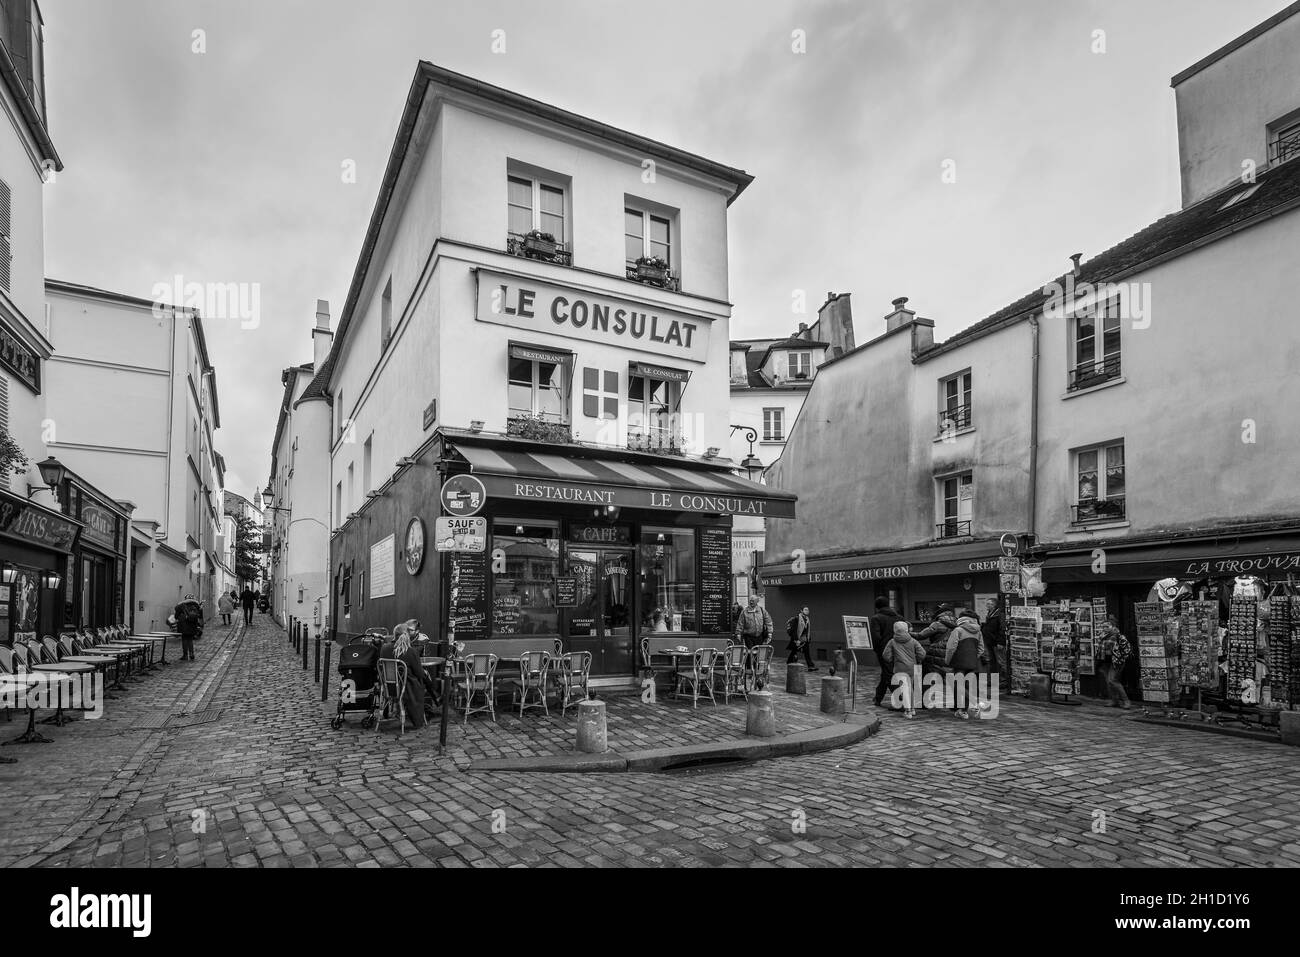 Paris, Frankreich - 24. Dezember 2018: Außenansicht des Restaurants La Consulat in Montmartre, Paris, Frankreich. Schwarzweißfotografie. Architektur und Land Stockfoto